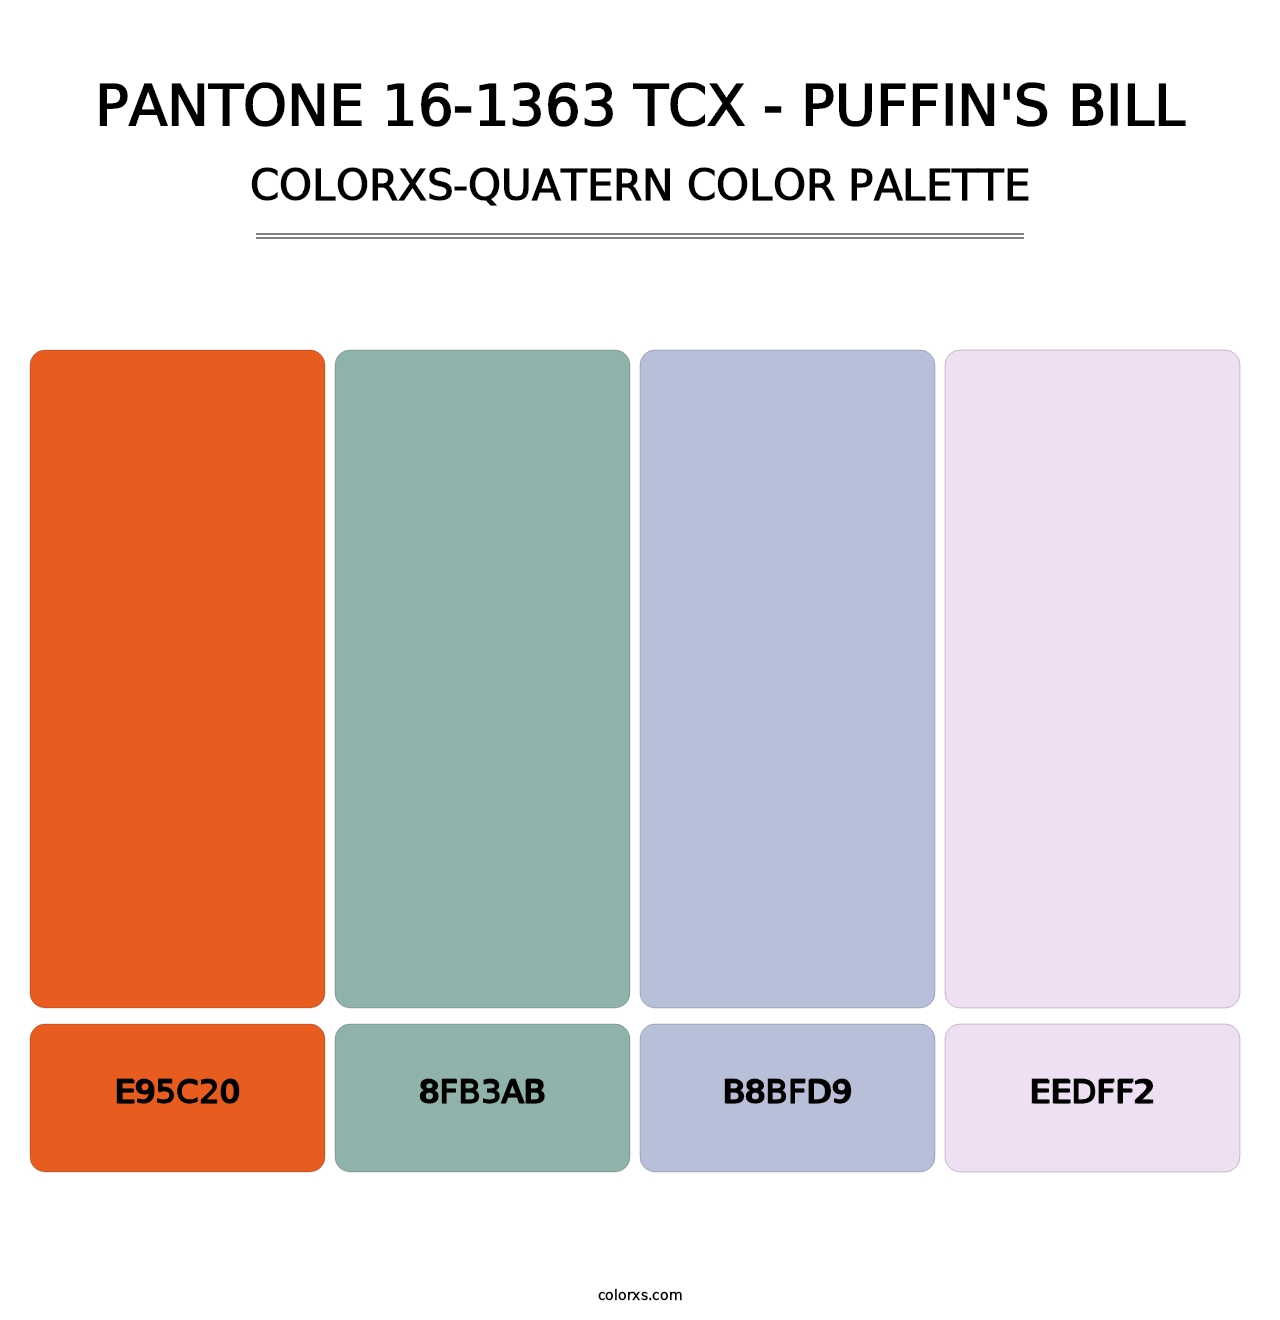 PANTONE 16-1363 TCX - Puffin's Bill - Colorxs Quatern Palette